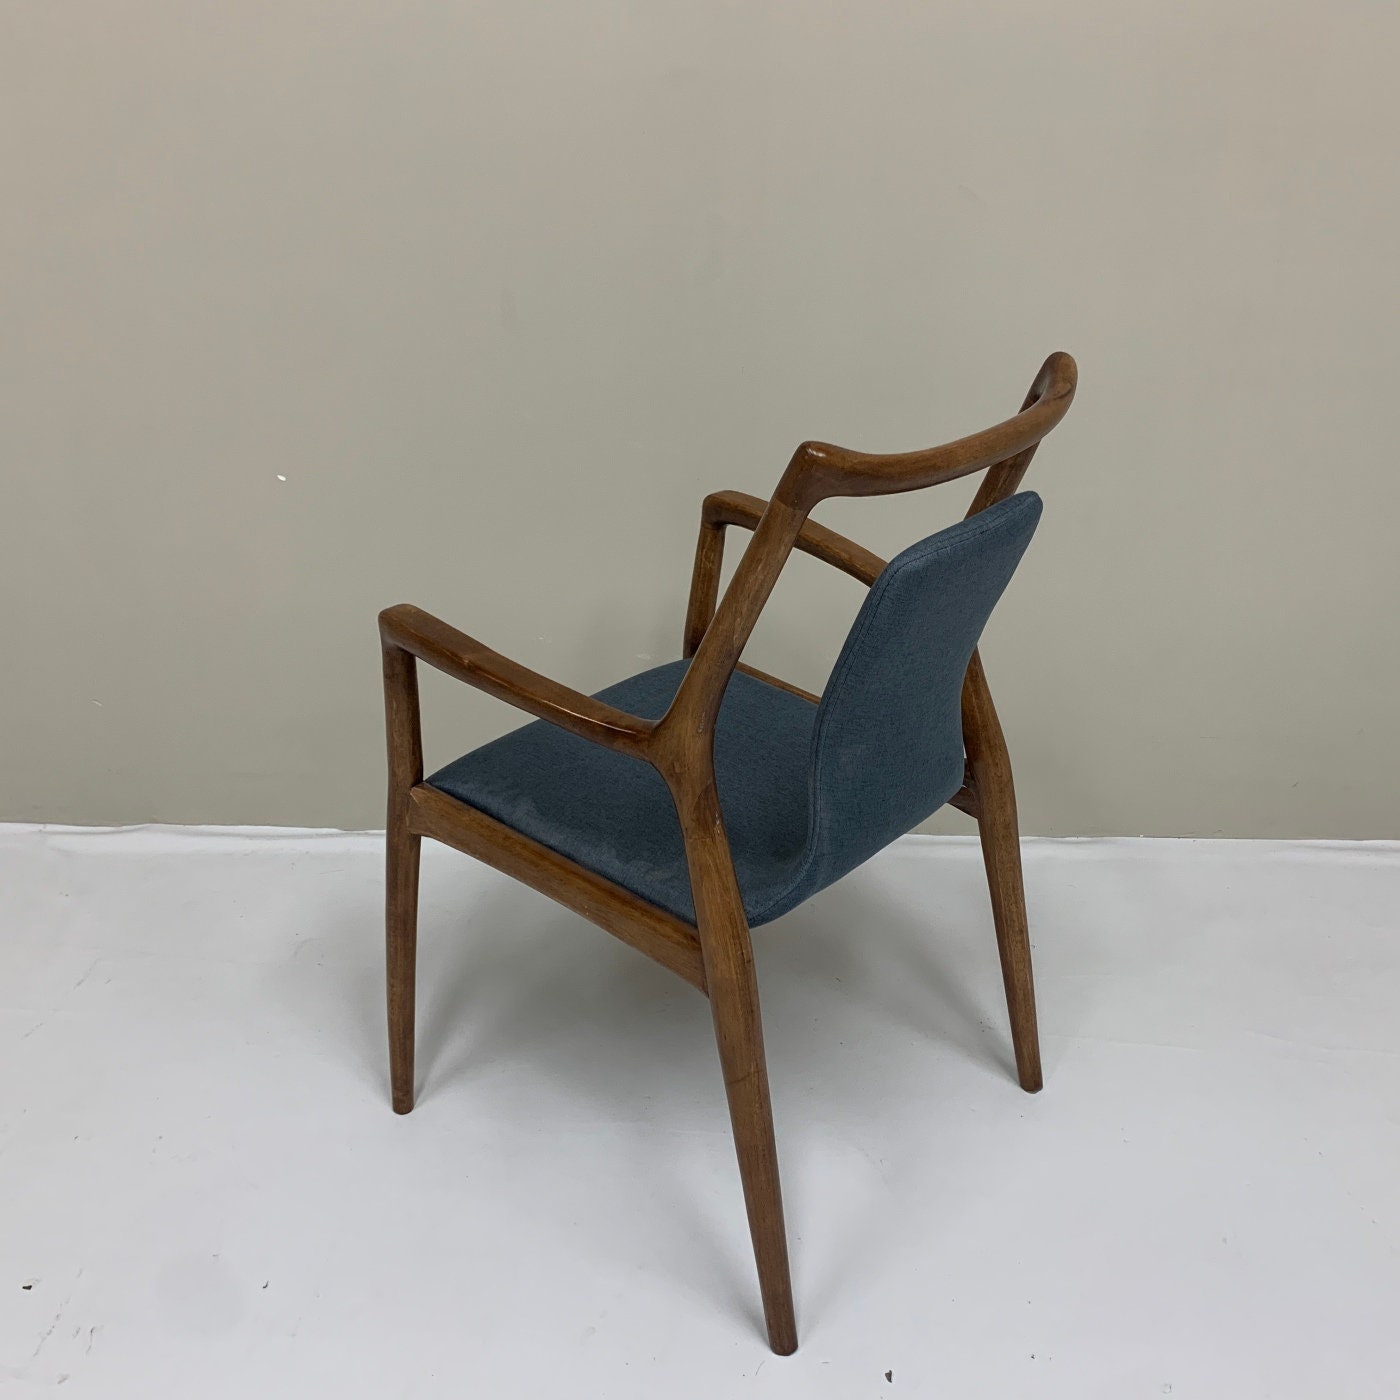 Sedia verniciata marrone, sedia in frassino, sedia moderna della metà del secolo, sedia da pranzo in frassino bianco